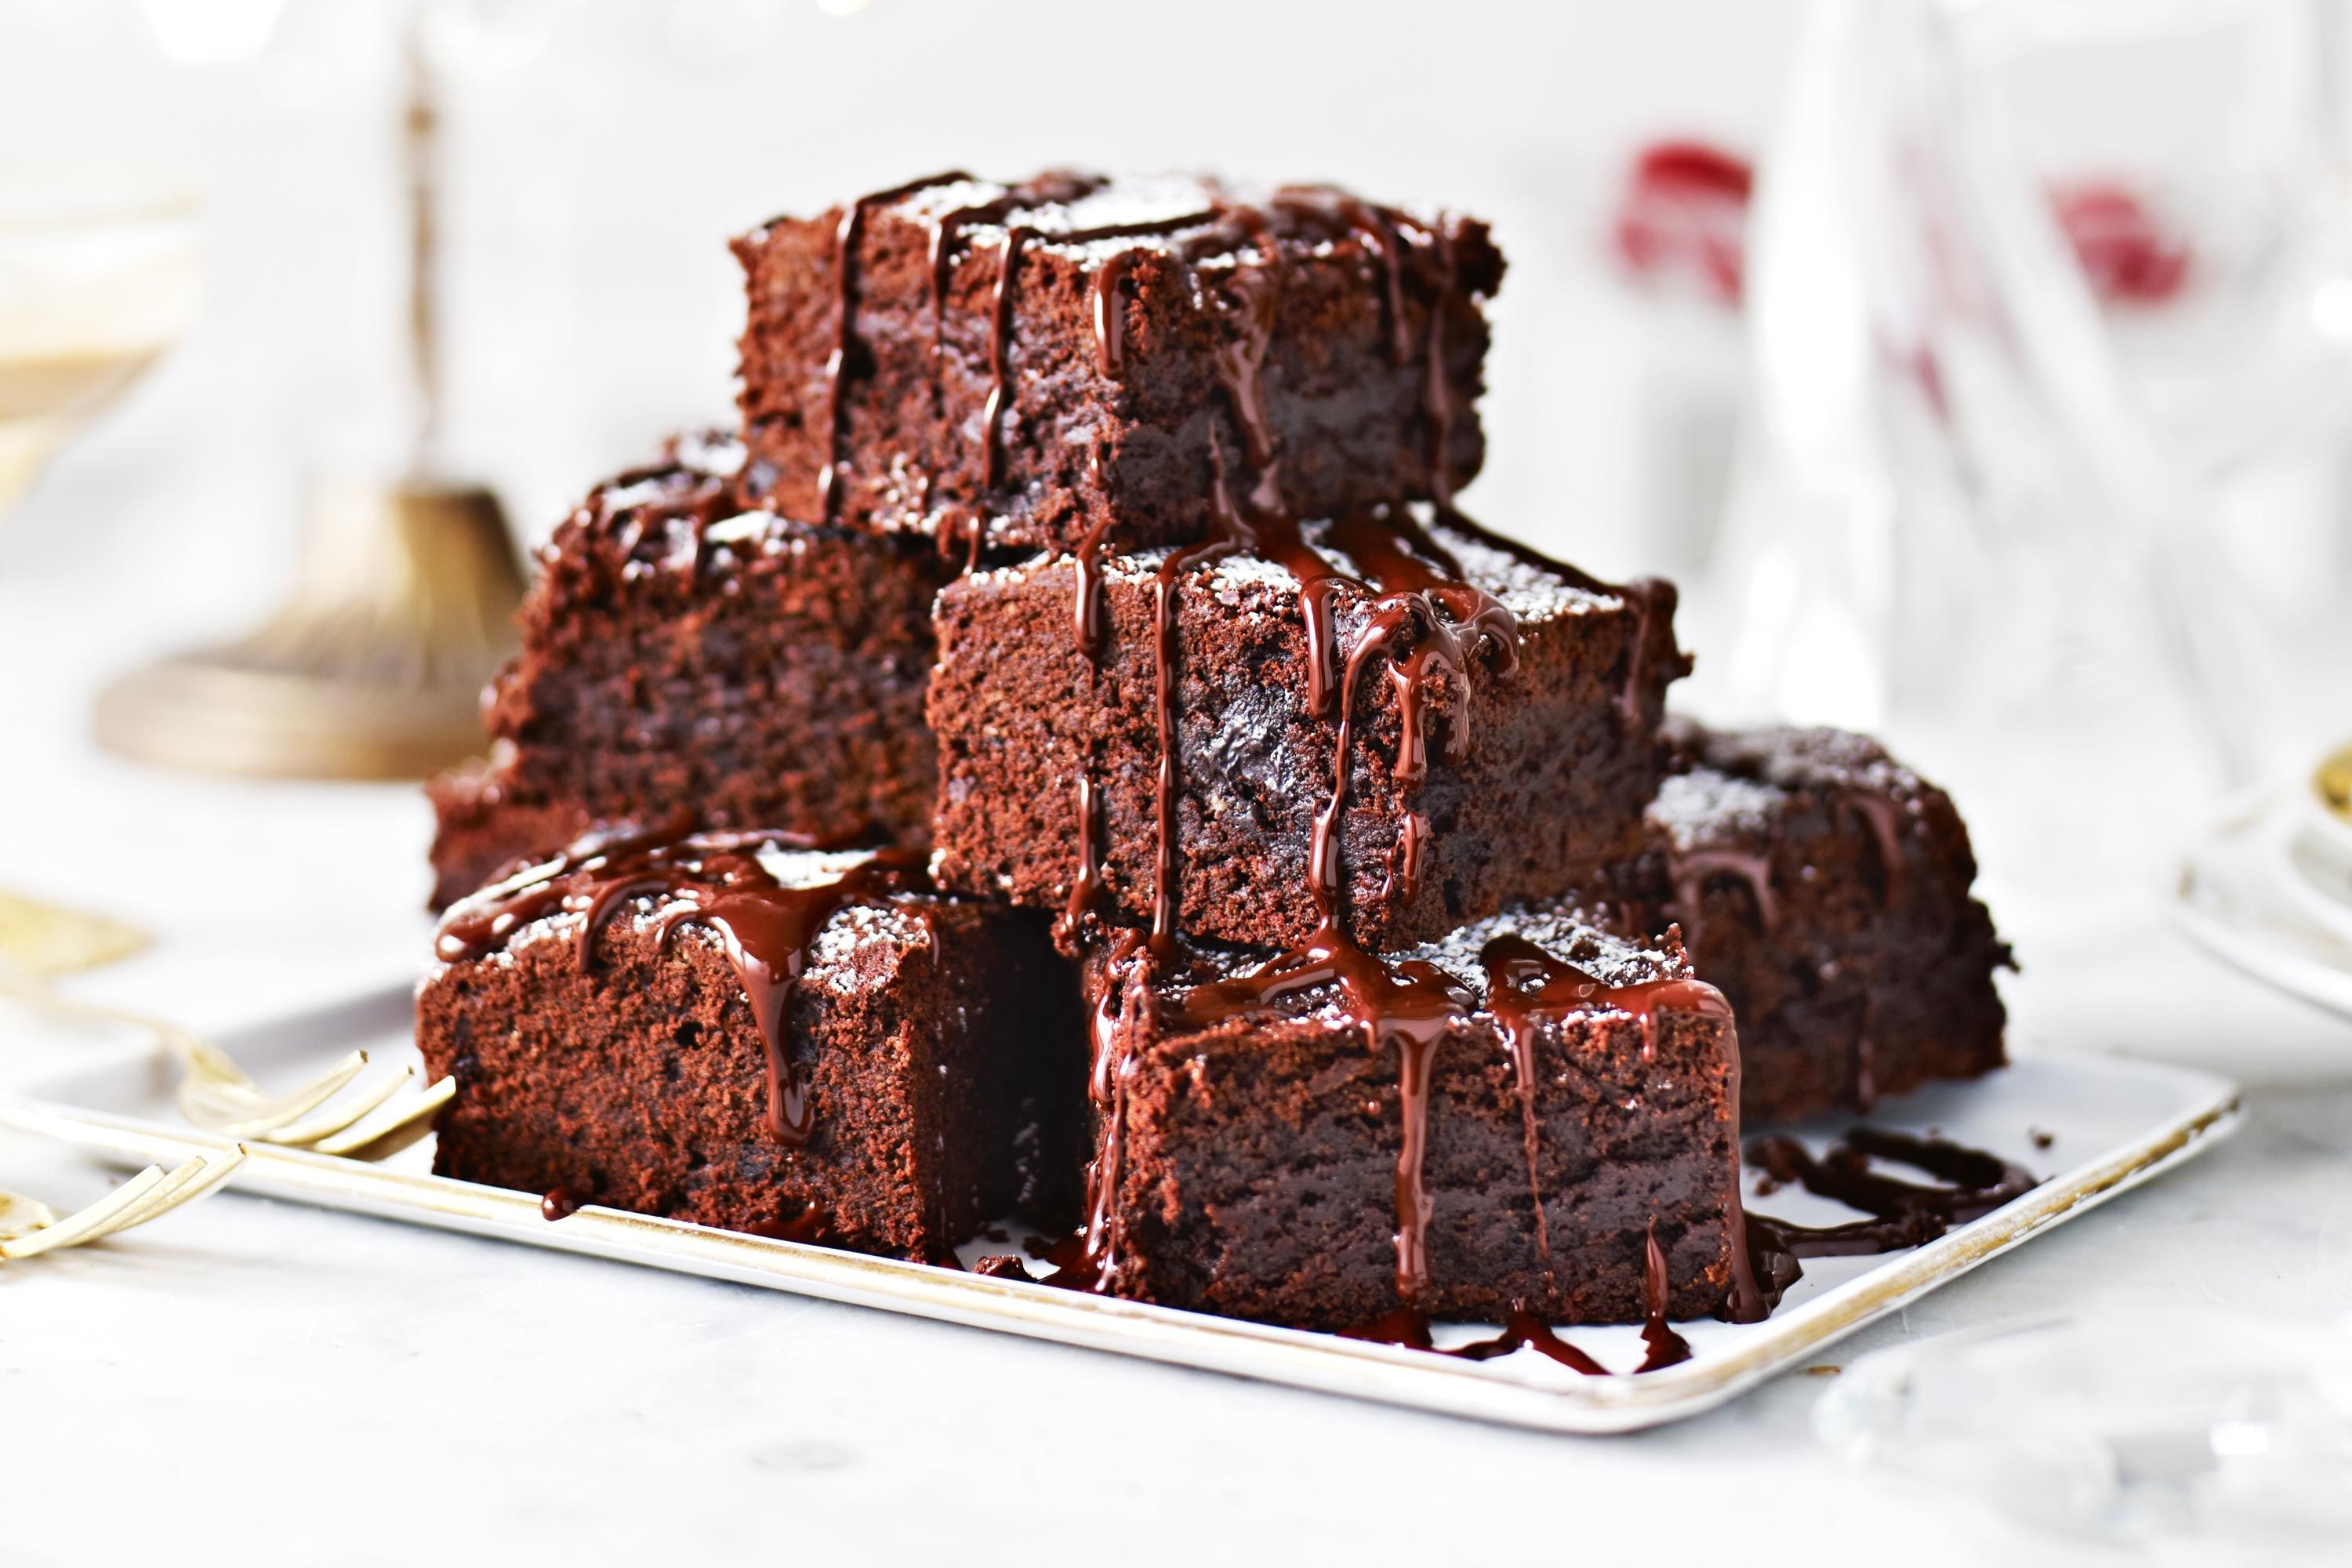 Emisoras Unidas - Brownies fáciles de preparar y realmente deliciosos